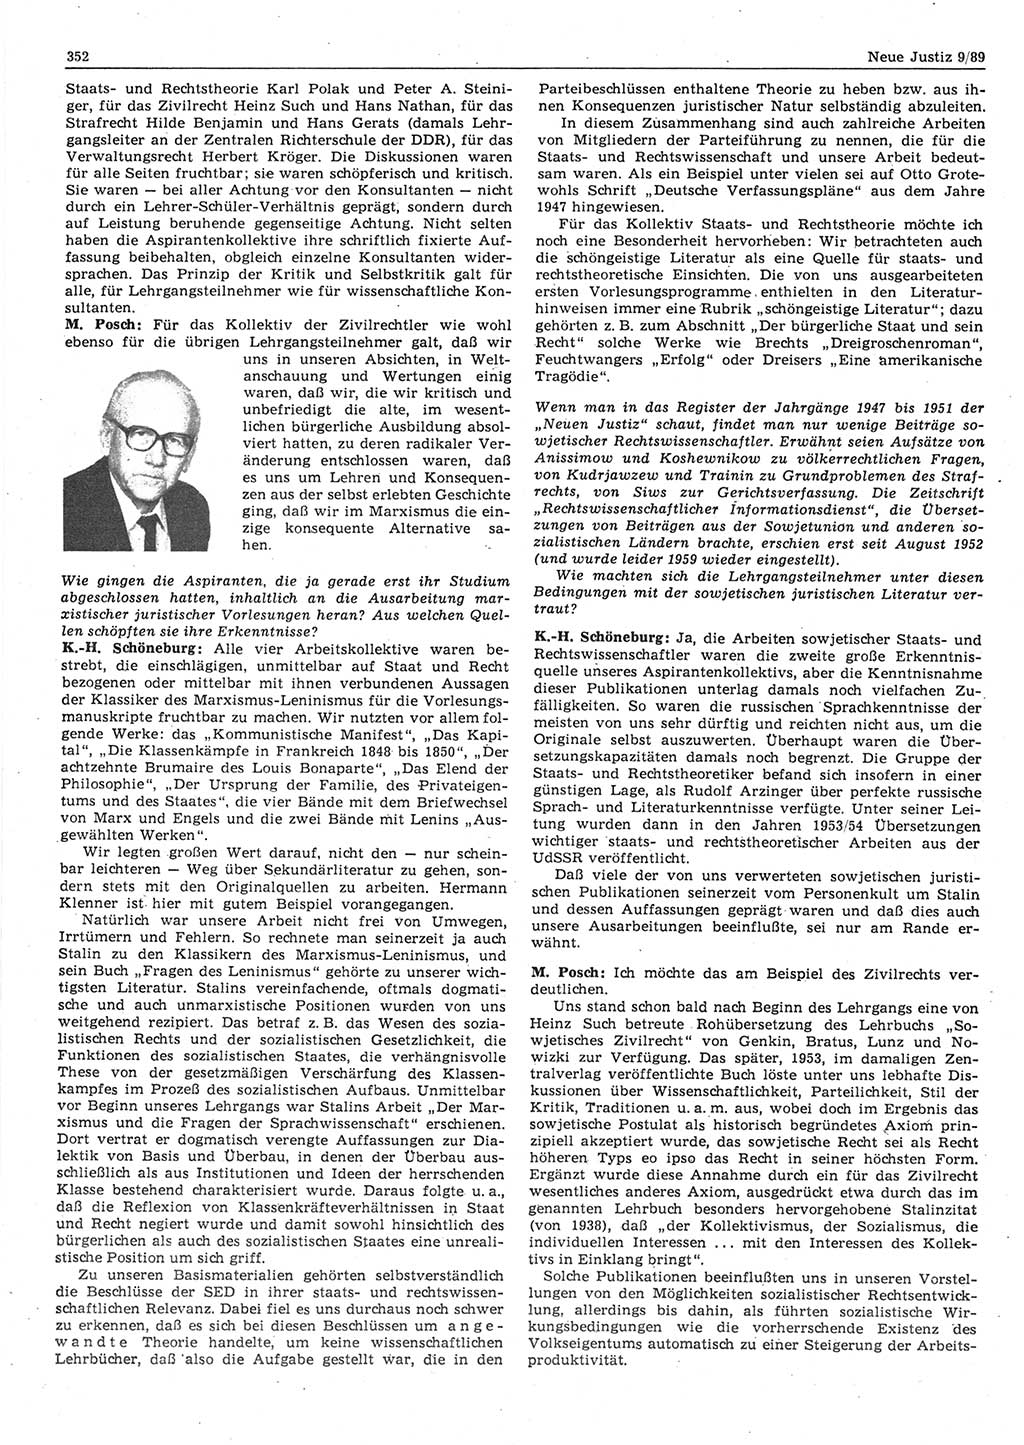 Neue Justiz (NJ), Zeitschrift für sozialistisches Recht und Gesetzlichkeit [Deutsche Demokratische Republik (DDR)], 43. Jahrgang 1989, Seite 352 (NJ DDR 1989, S. 352)